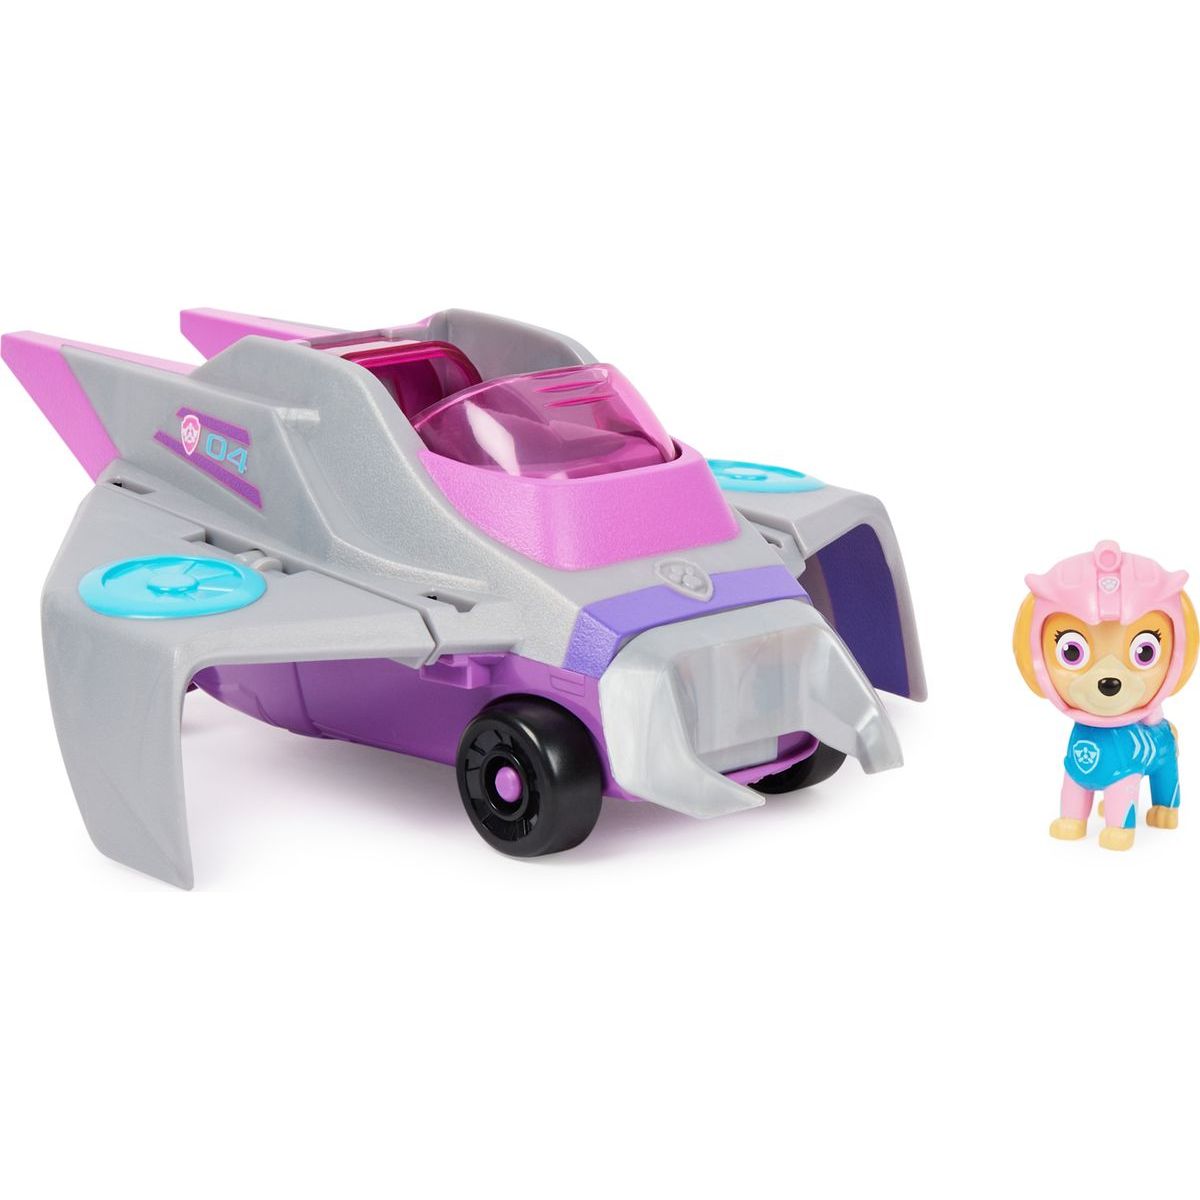 Paw Patrol Aqua vozidla s figurkou Skye